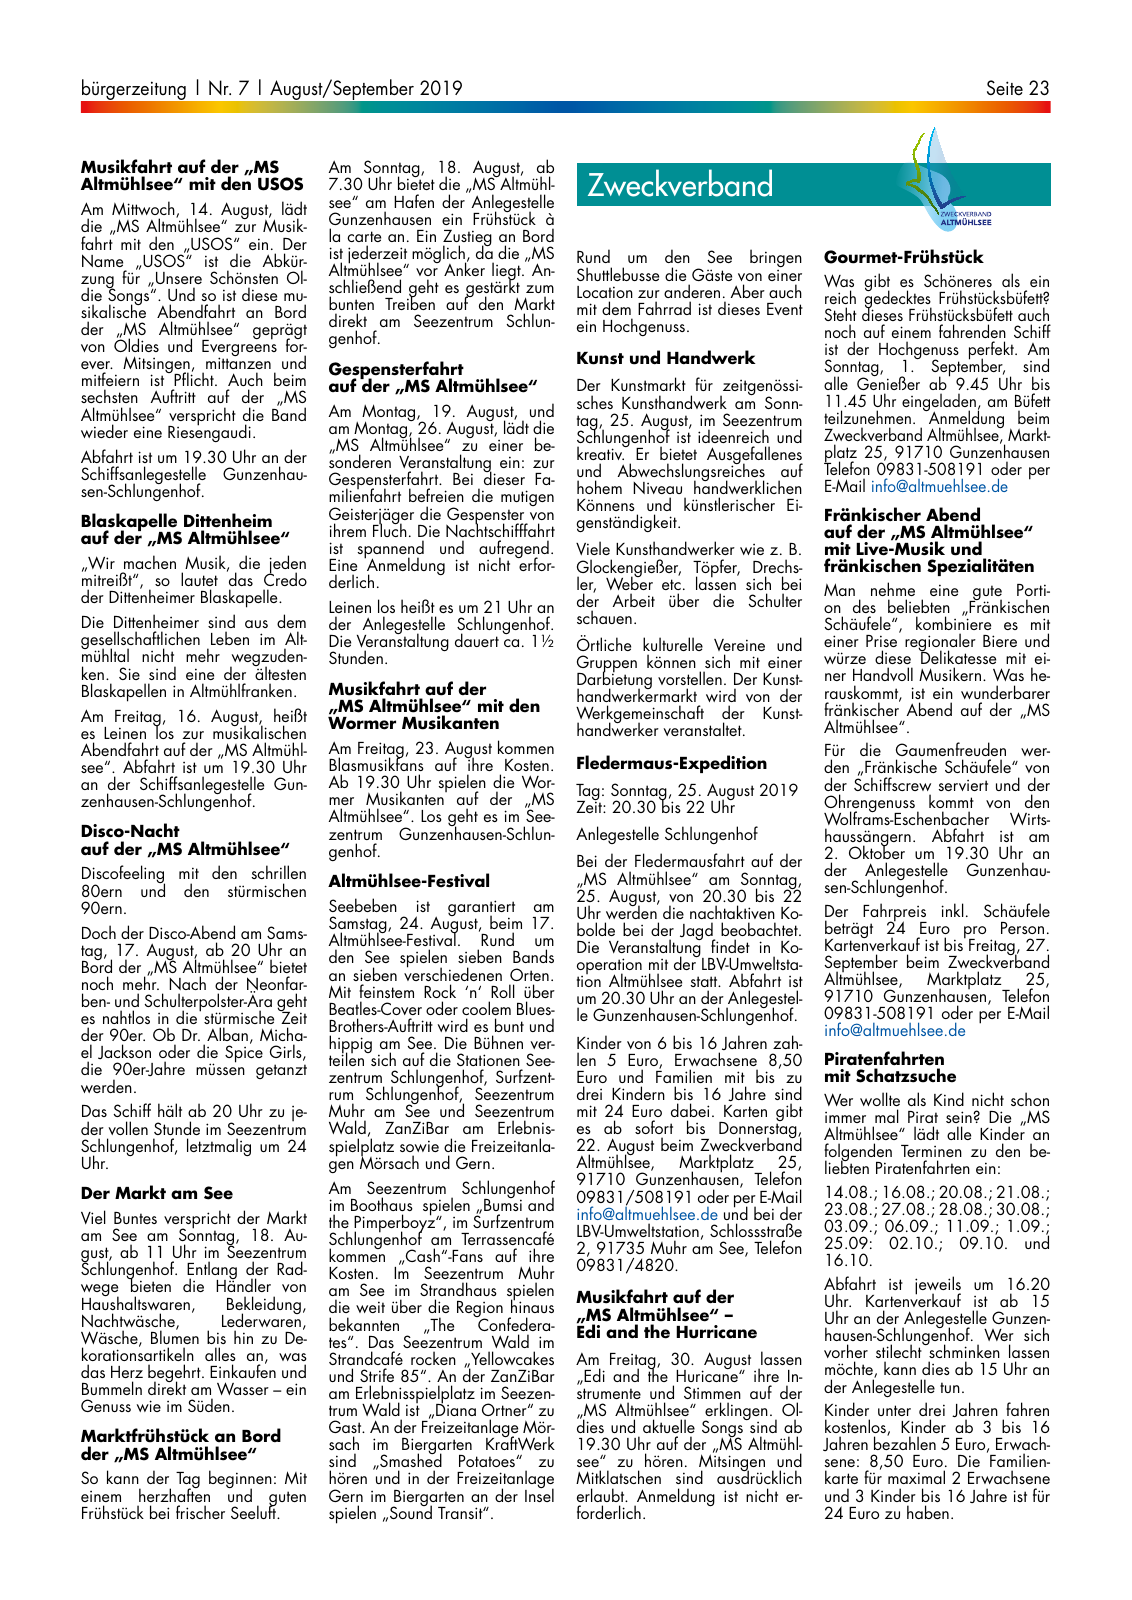 Vorschau buergerzeitung_07_2019 Seite 23